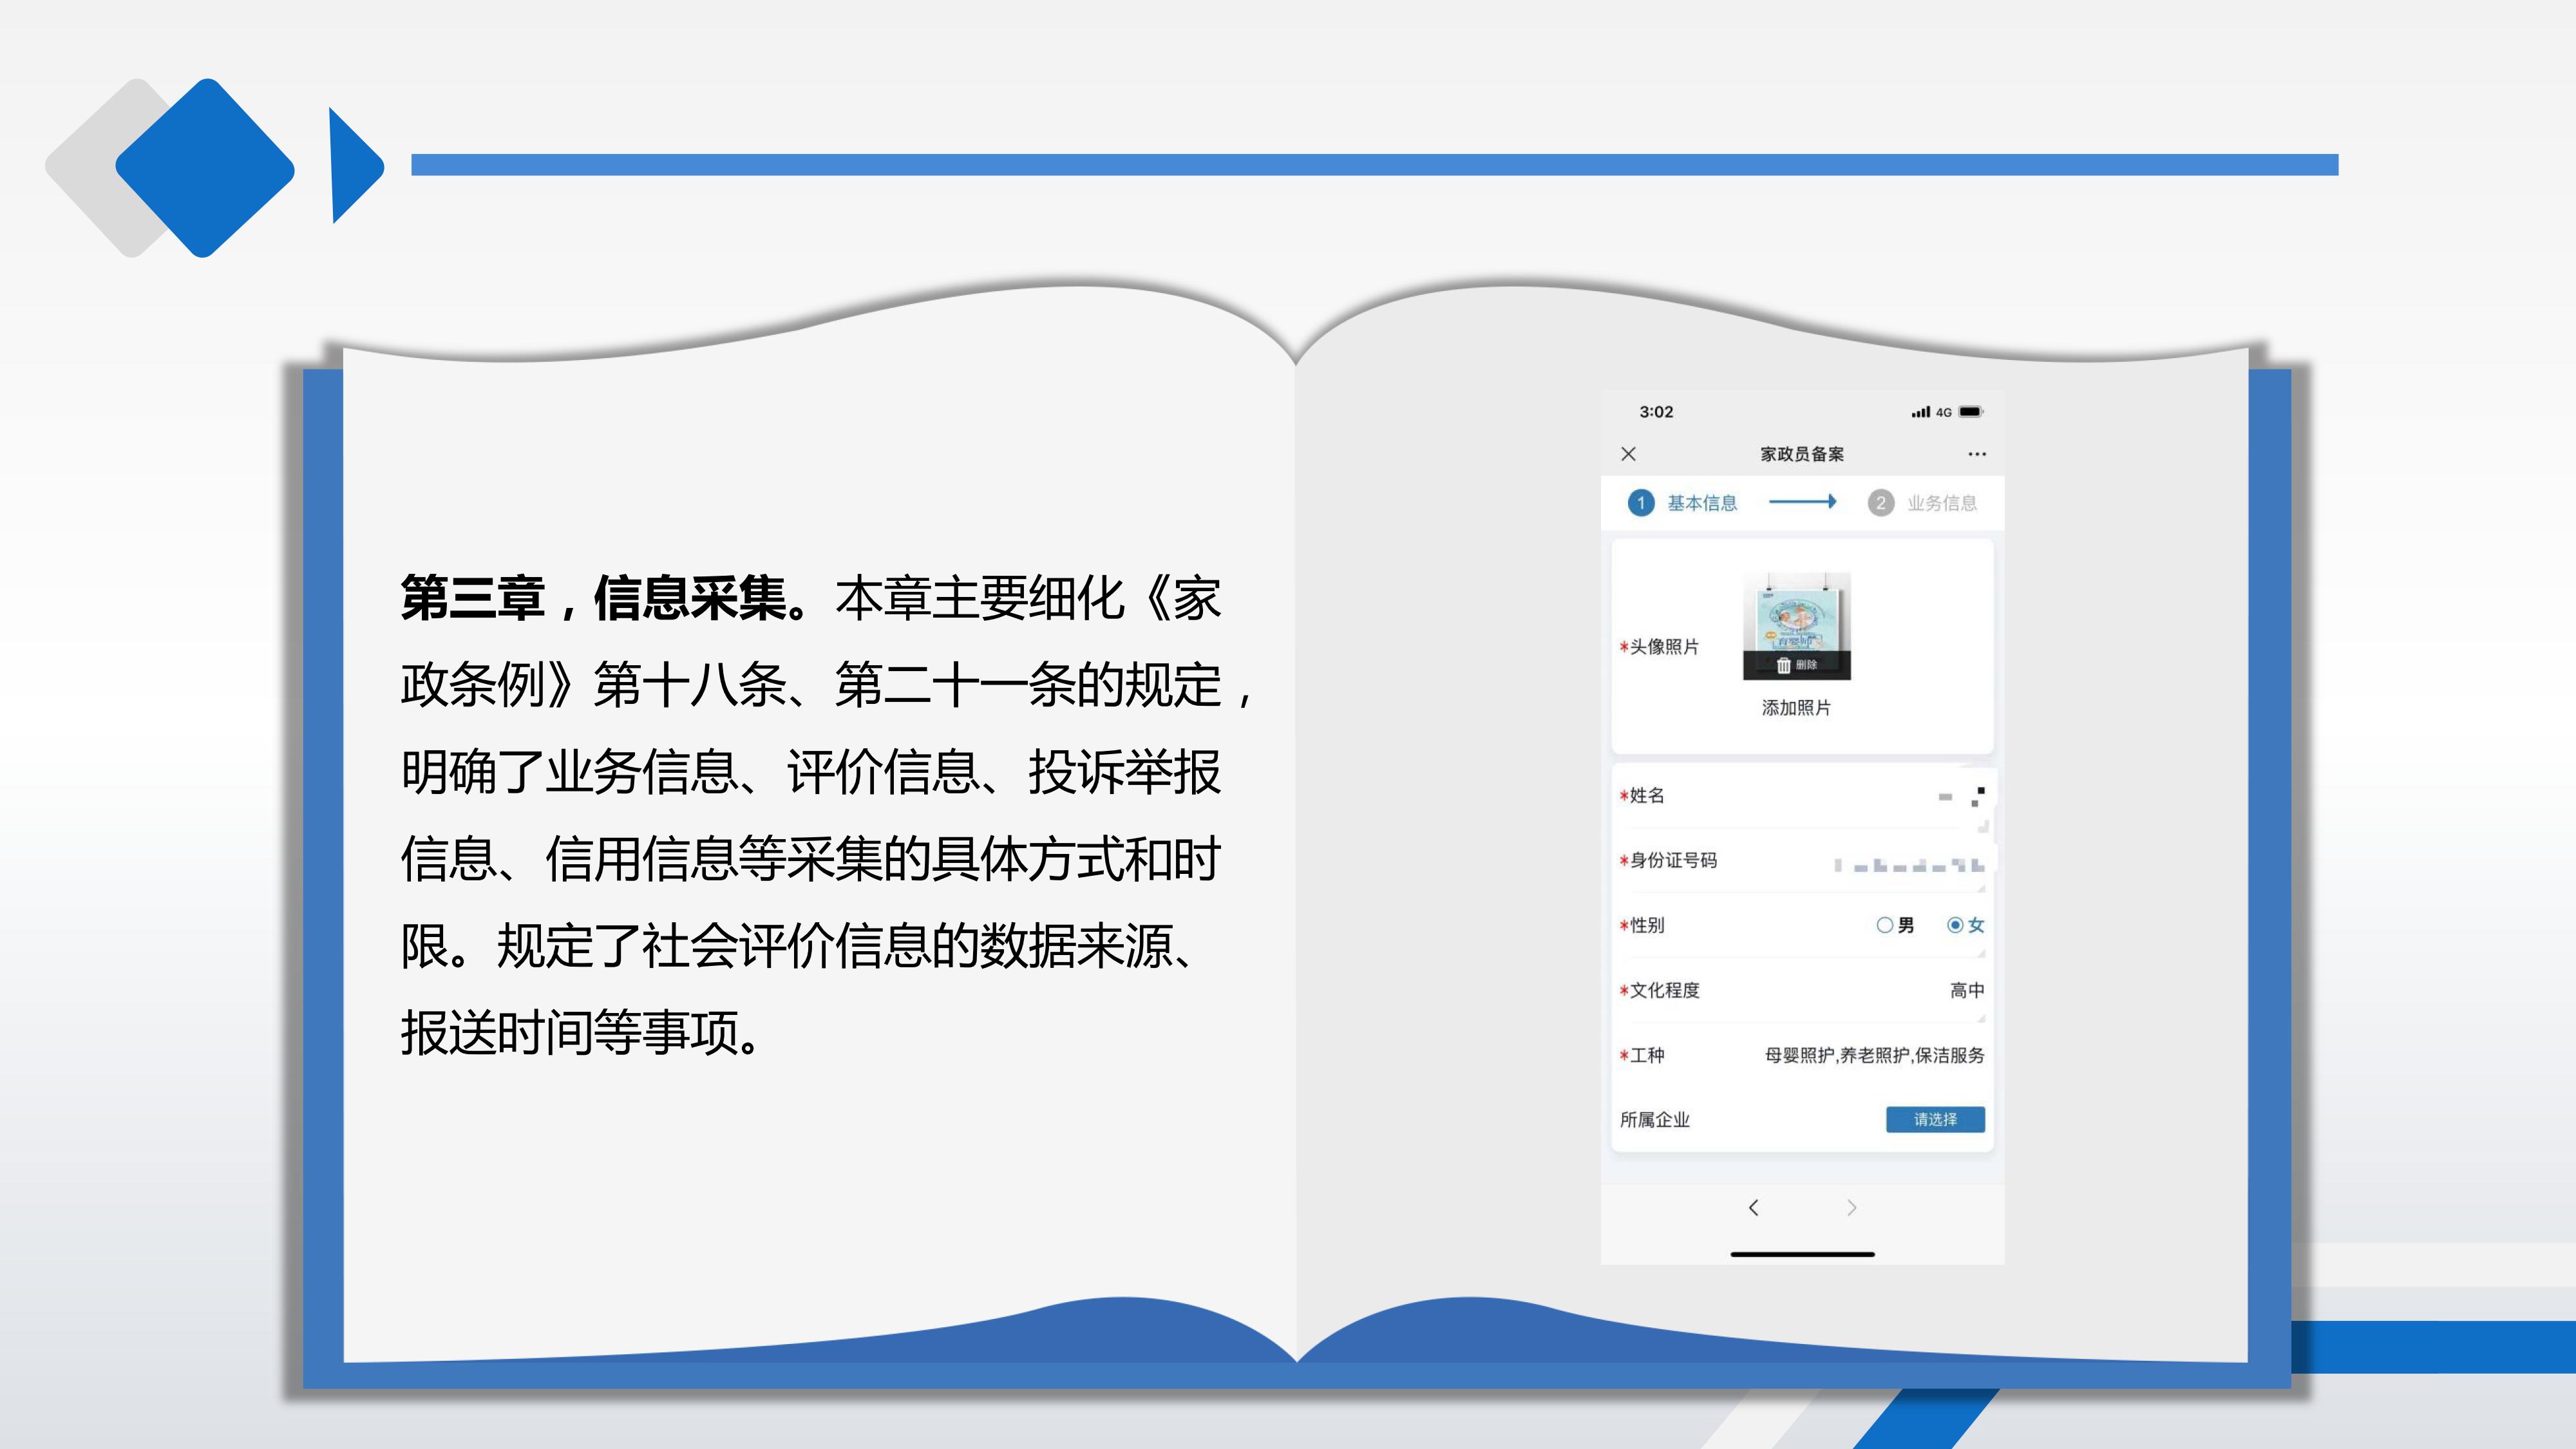 上海市家政服务管理平台信息管理暂行办法_08